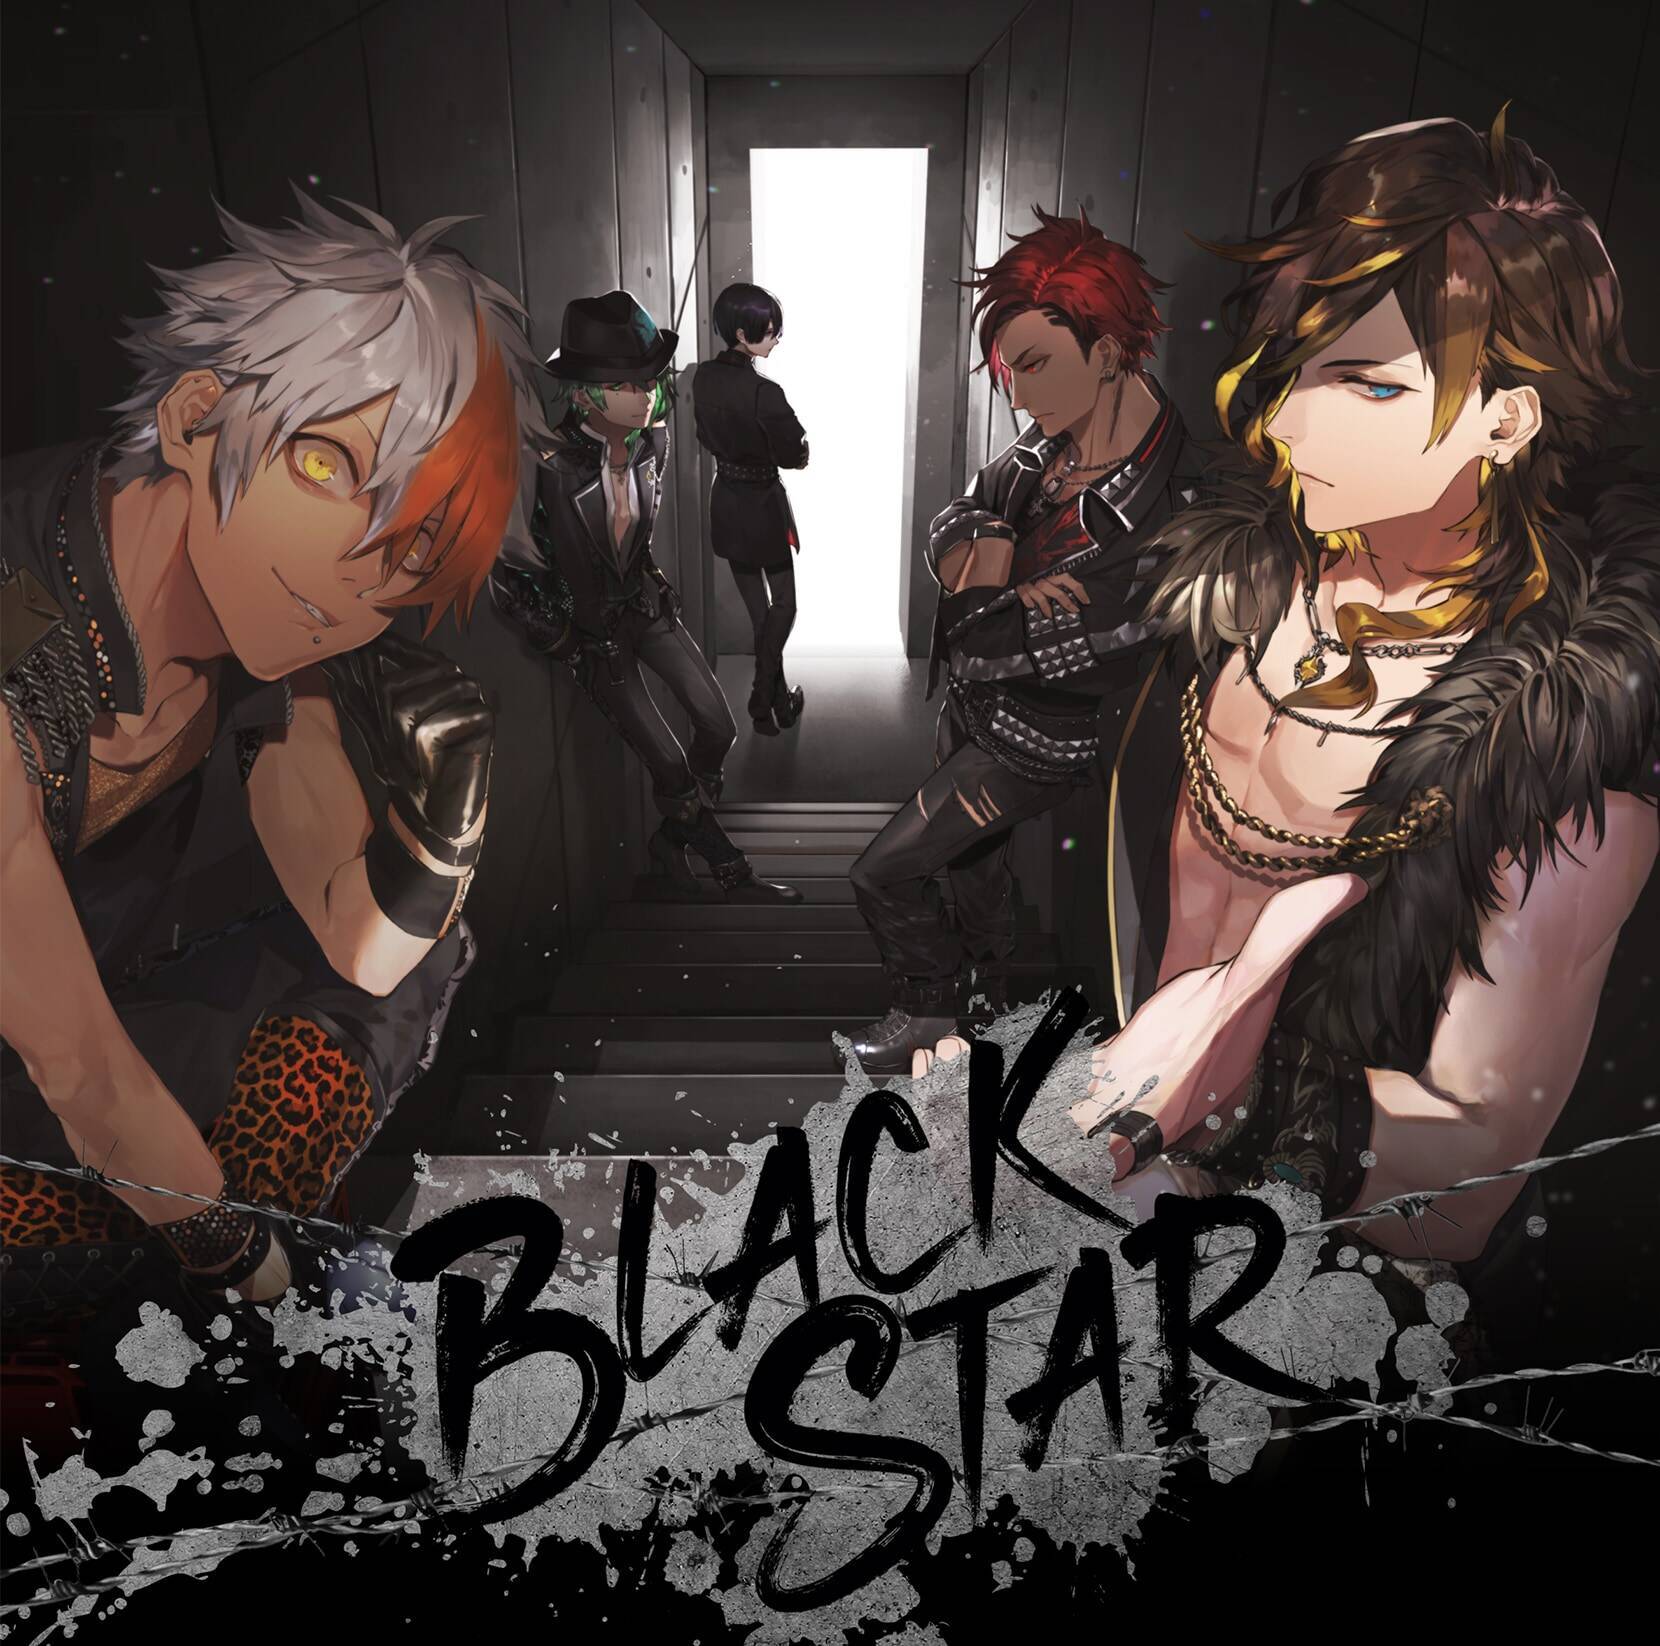 ブラスタ 1stアルバム Blackstar 発売決定 初回限定版はチーム別にパッケージを展開 年7月8日 エキサイトニュース